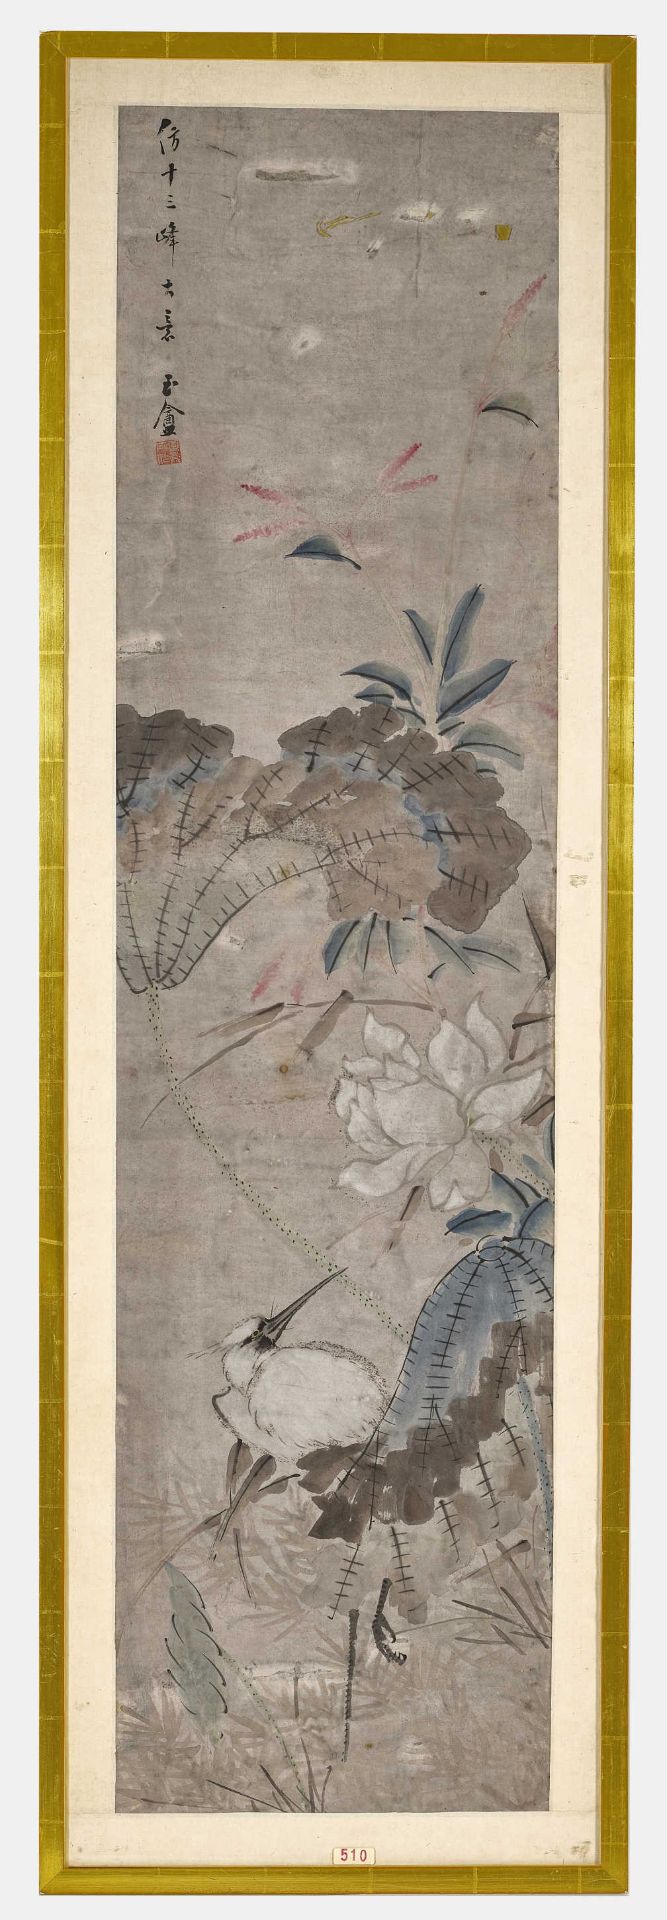 CHINA, ENDE 19. JH.Blühendes Geäst mit Reiher.Aquarell auf Reispapier,123x32 cm (LM), gerahmt- - -